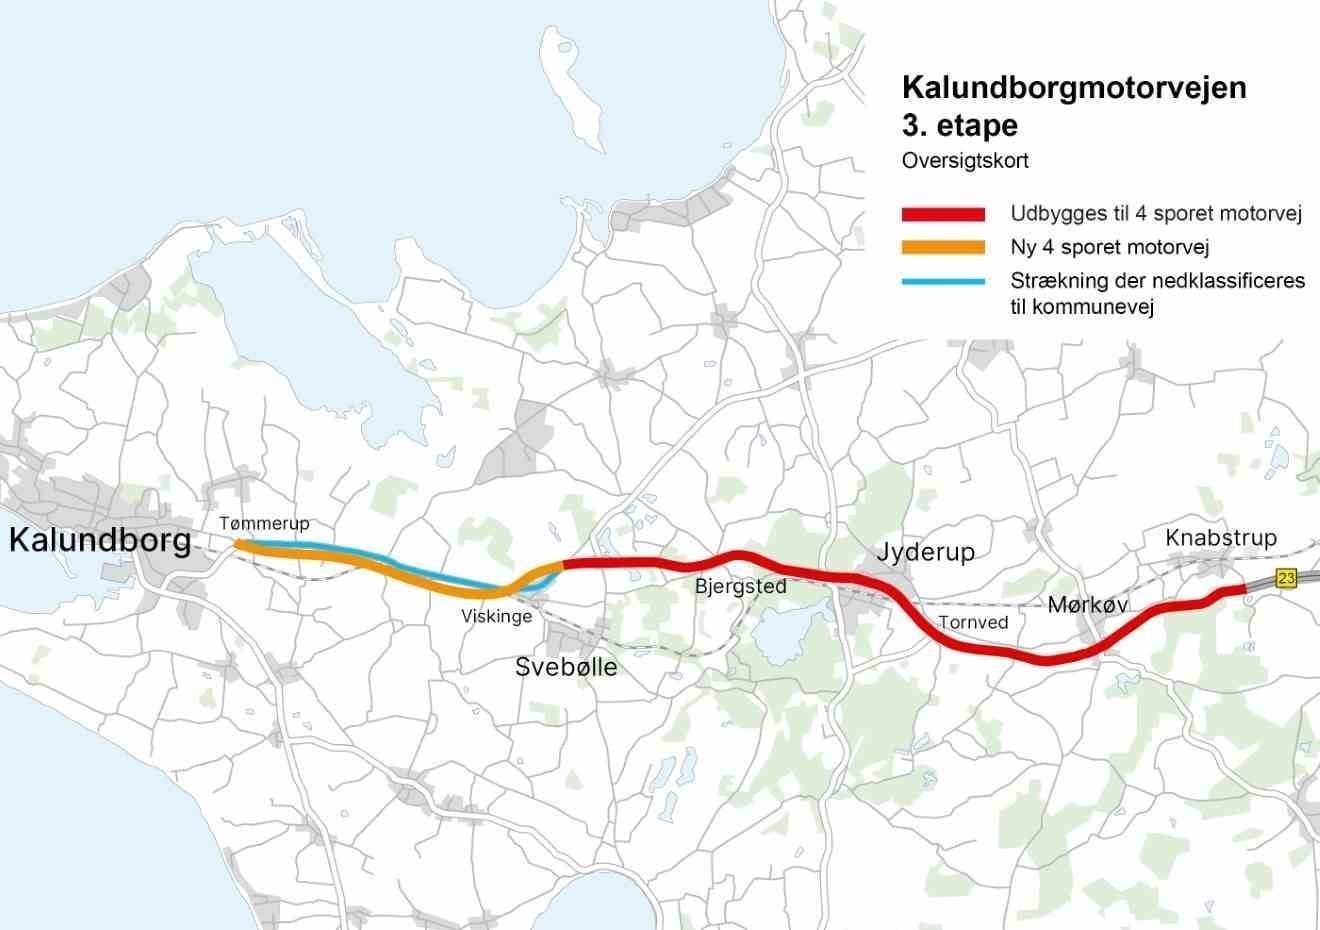 Anlæg af Kalundborgmotorvejens tredje etape